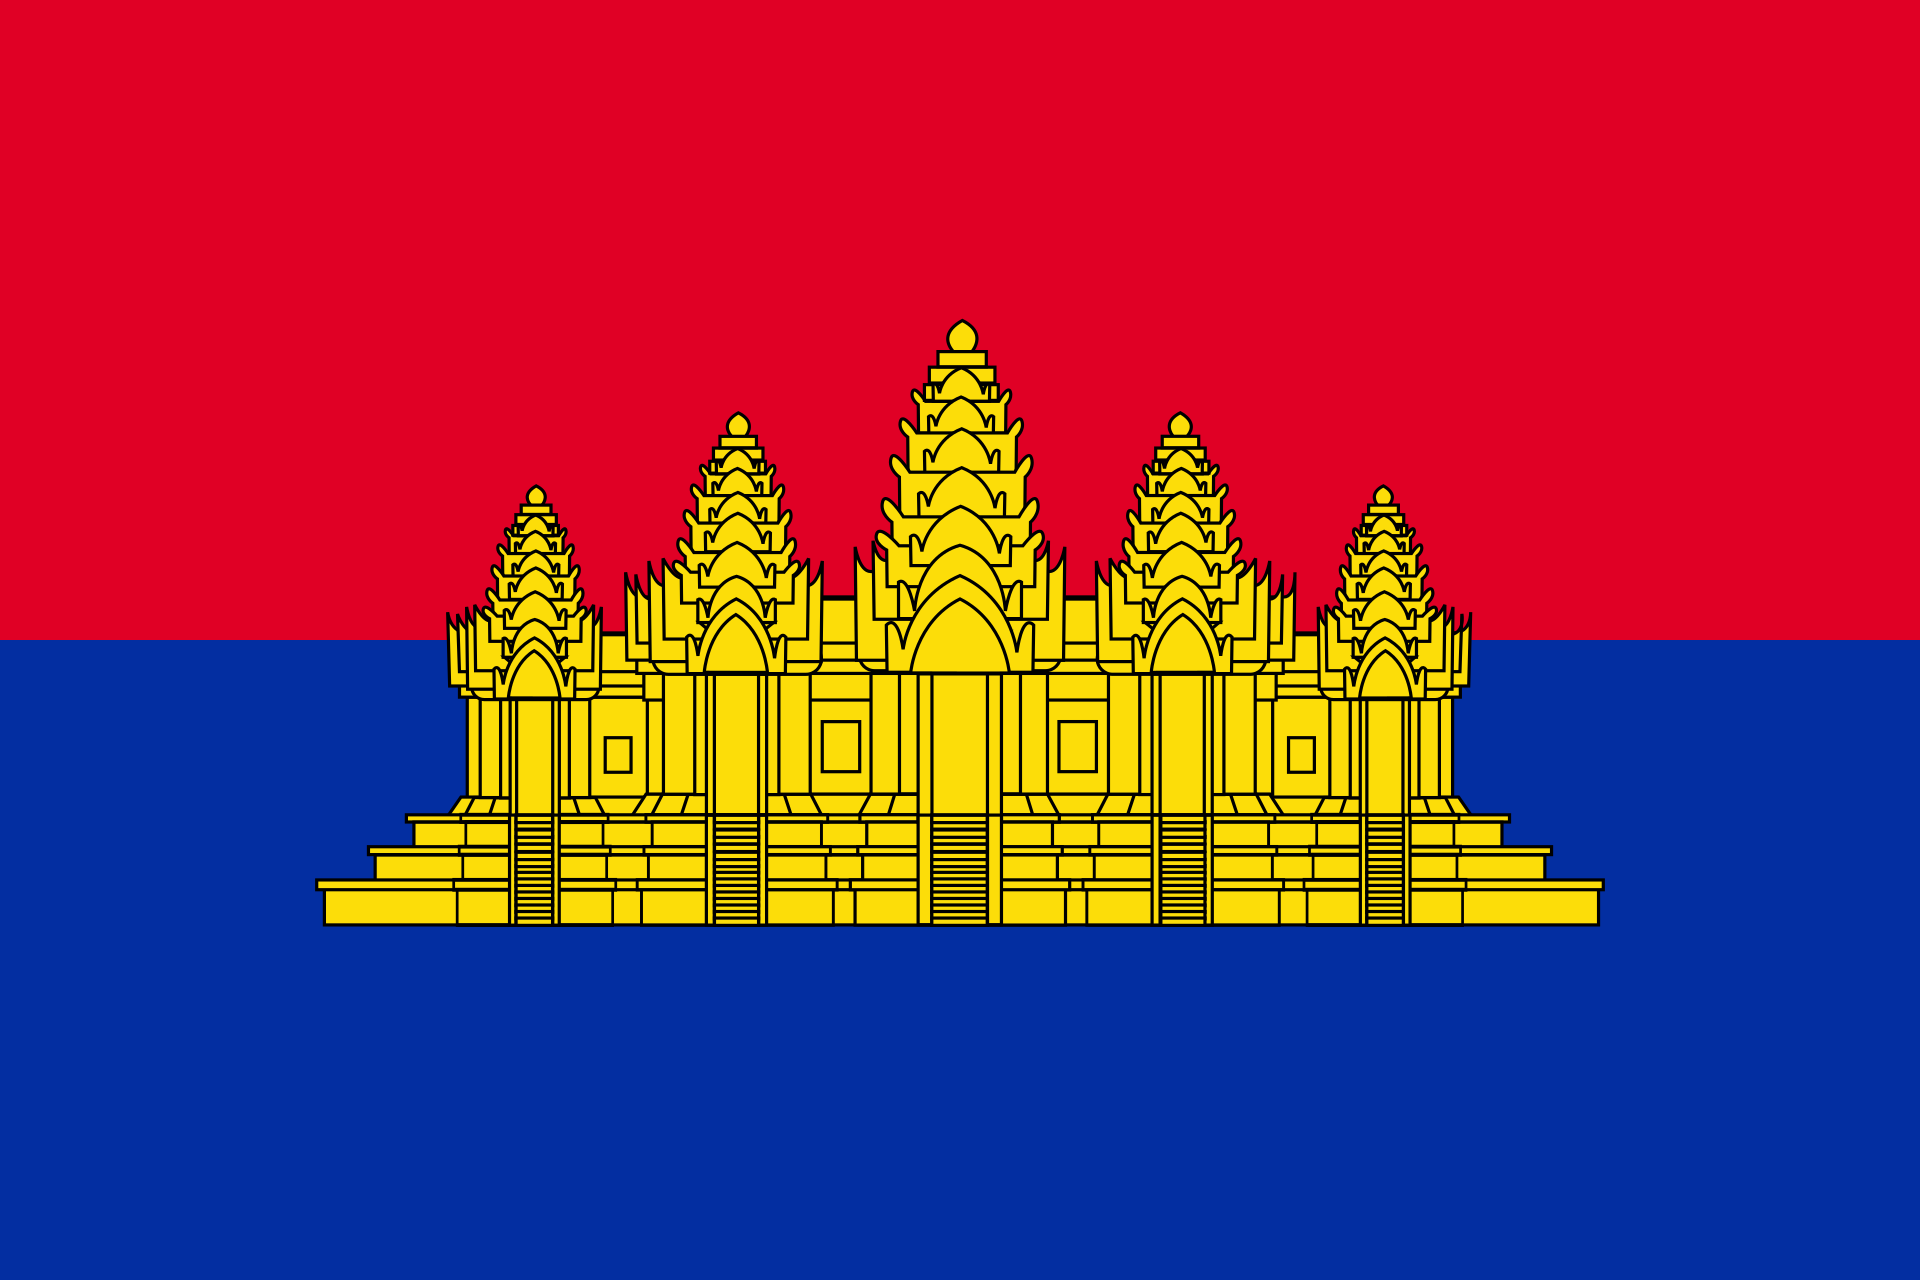 柬埔寨登记lolei sanskrit寺庙 库存照片. 图片 包括有 柬埔寨, 世界, 寺庙, 高棉, 文字 - 23534054